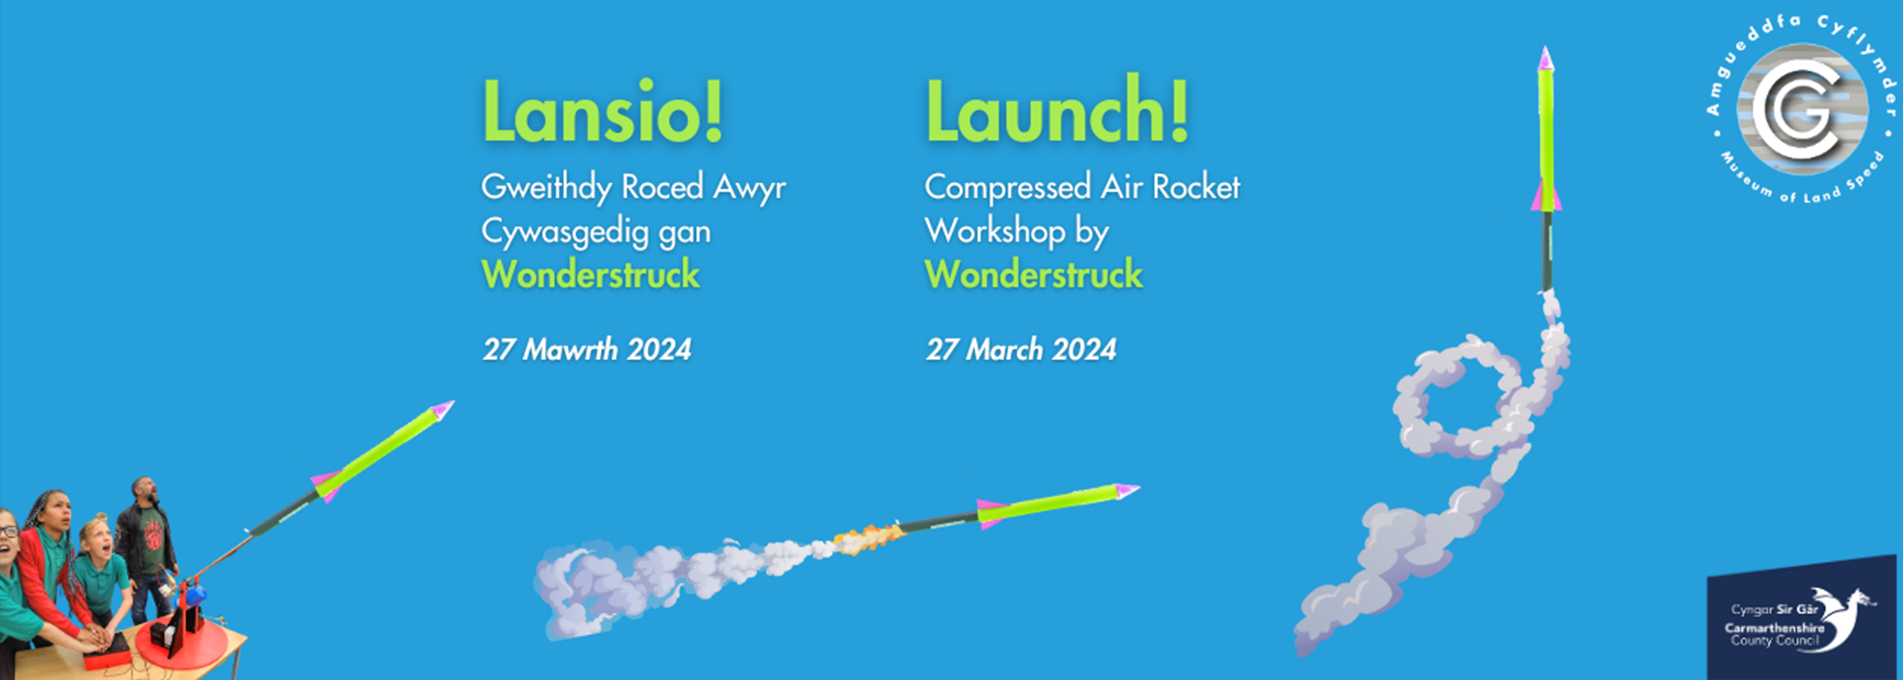 Launch! Compressed Air Rocket Workshop by Wonderstruck